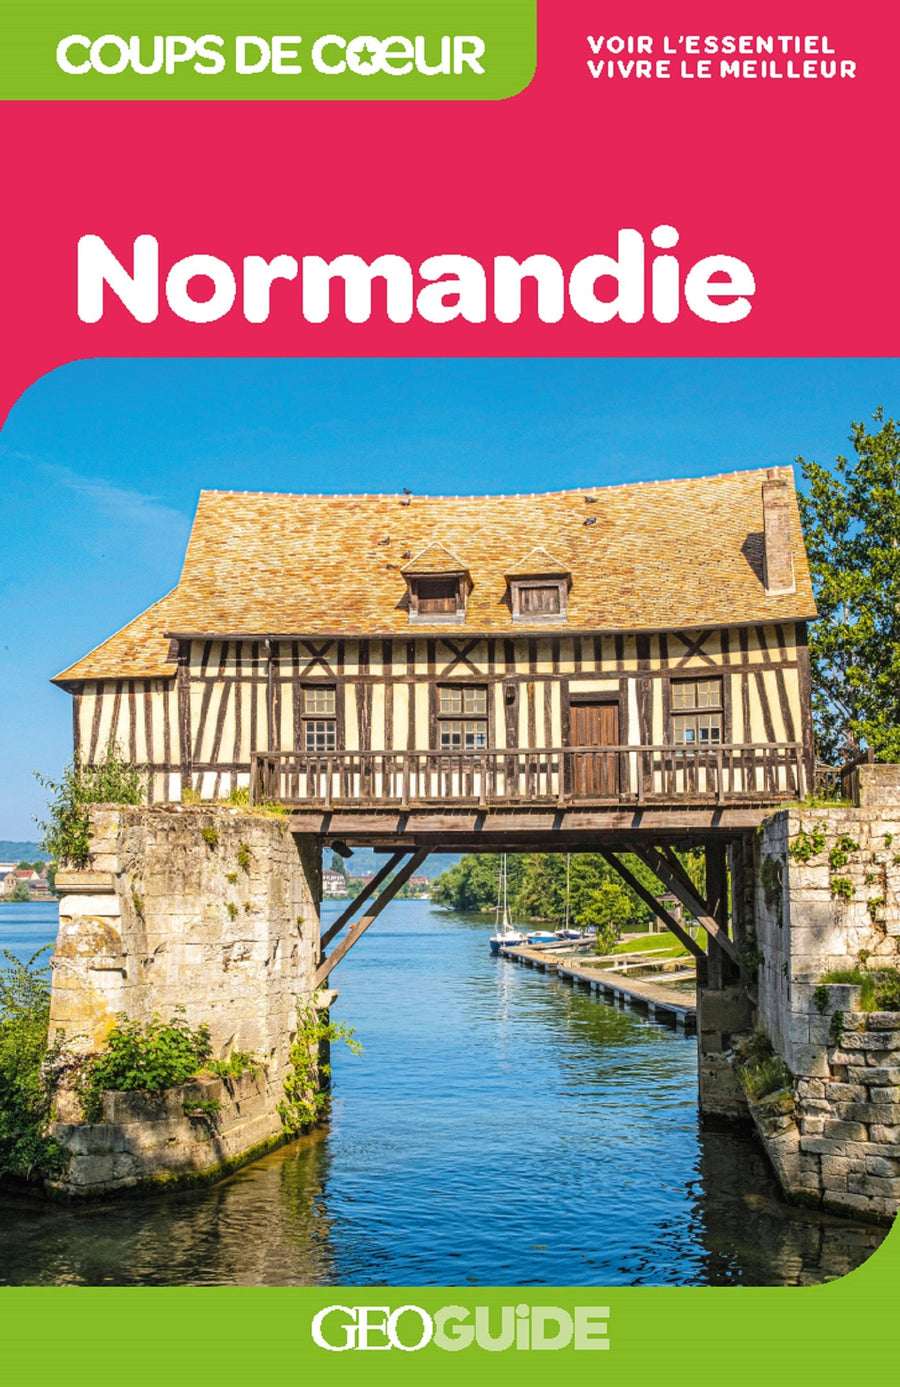 Géoguide (coups de coeur) - Normandie | Gallimard guide de voyage Gallimard 